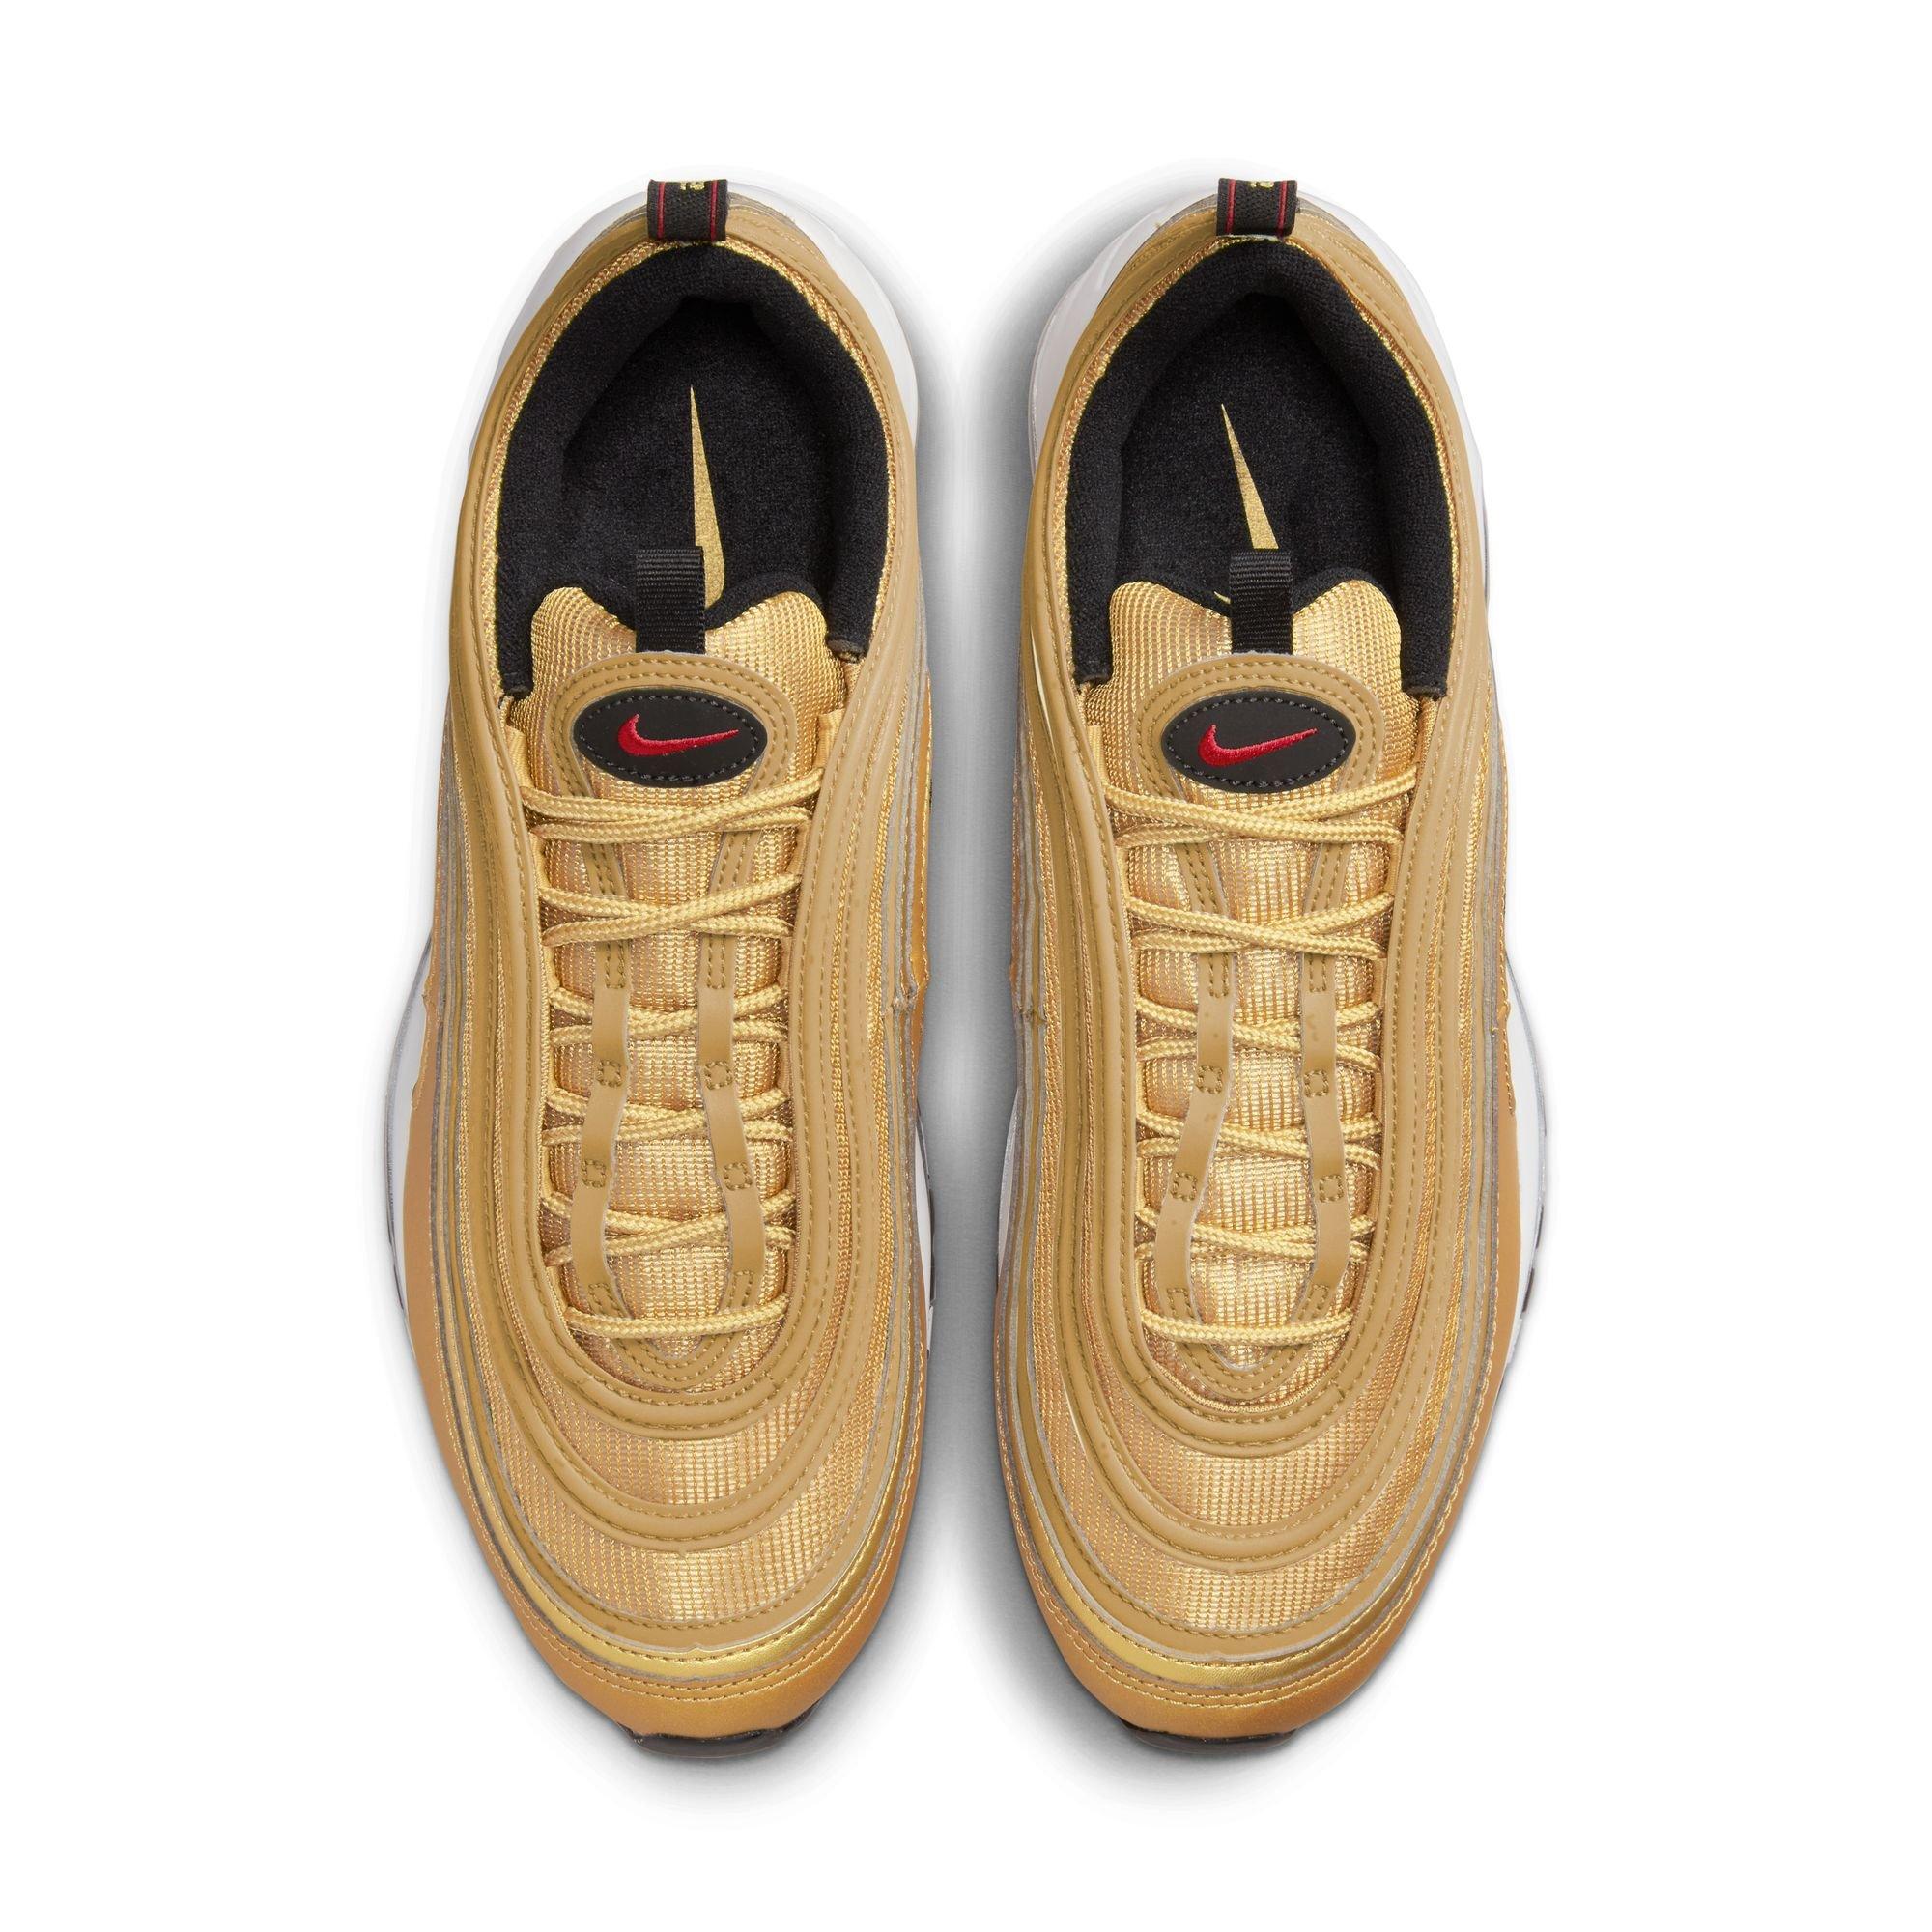 Nike Air Max 97 "Gold Bullet" Men's Shoe